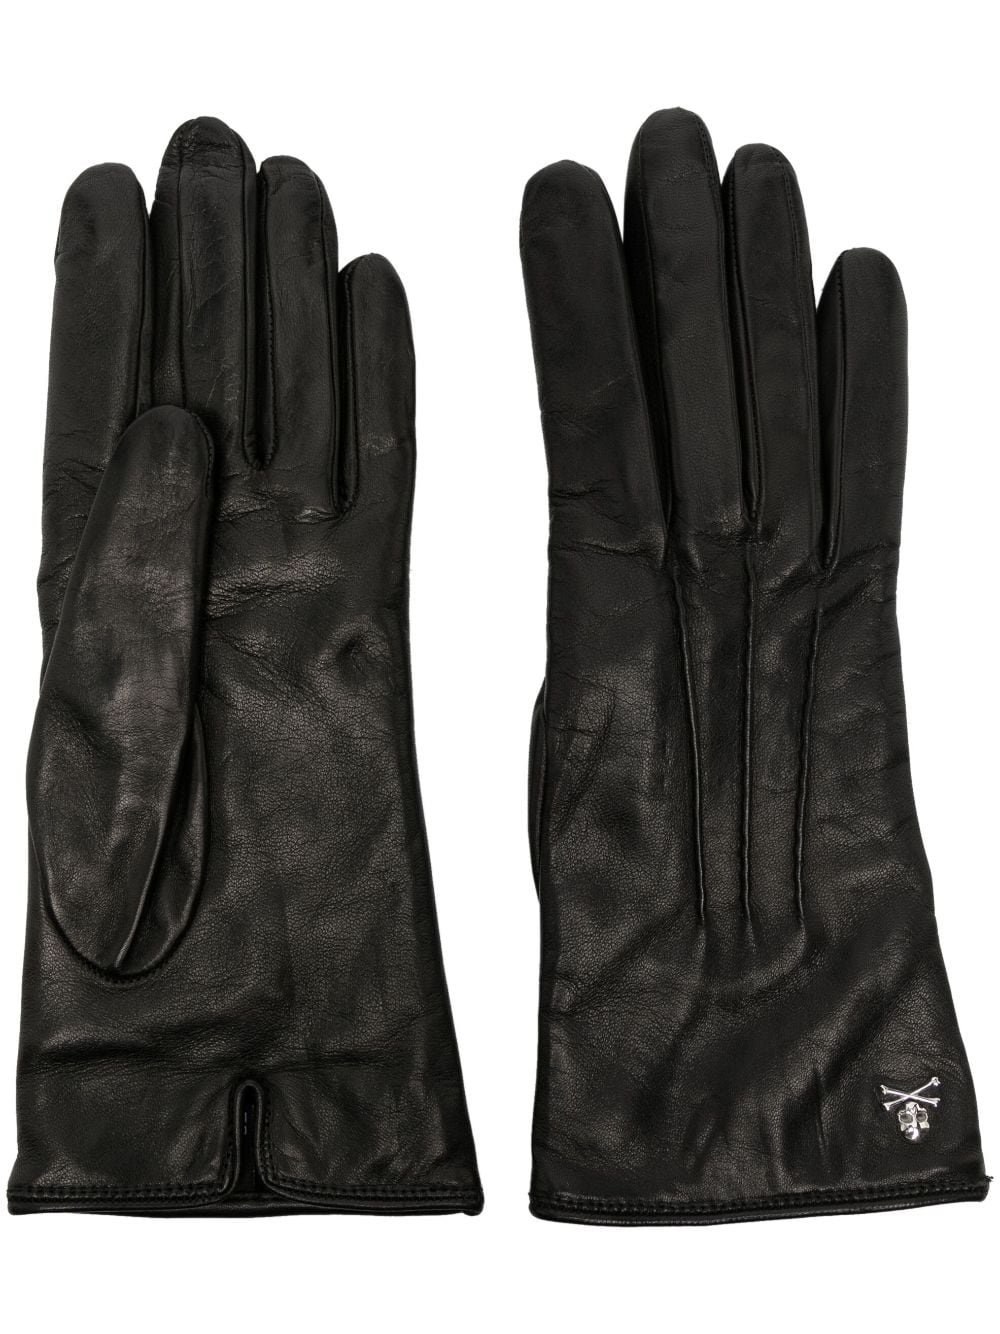 Skull & Bones leather gloves - 1